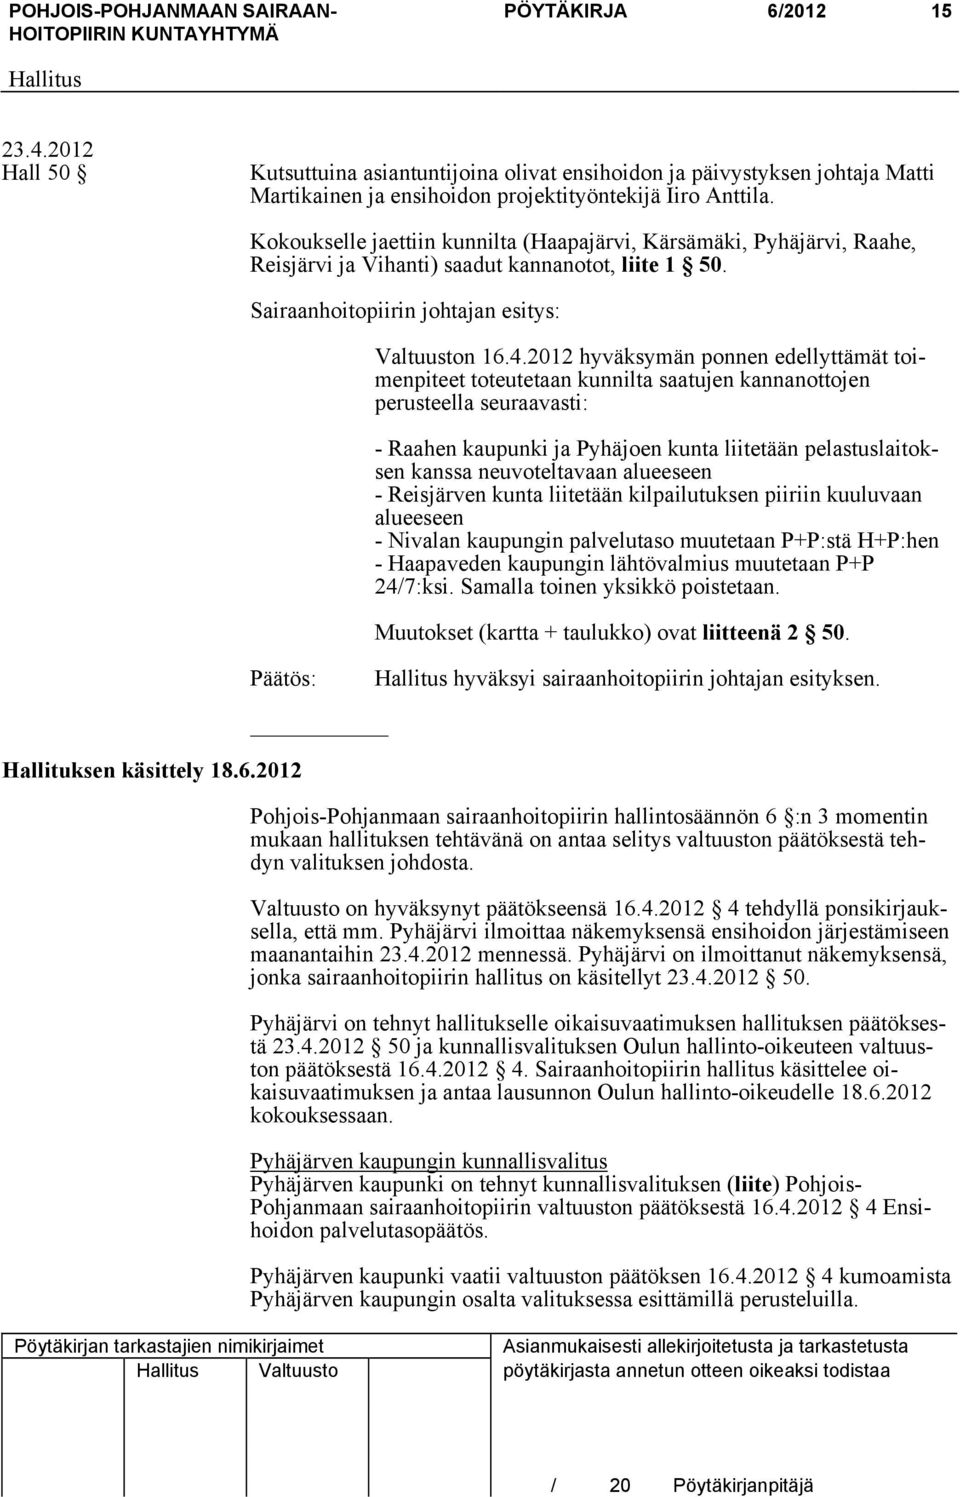 2012 hyväksymän ponnen edellyttämät toimenpiteet toteutetaan kunnilta saatujen kannanottojen perusteella seuraavasti: - Raahen kaupunki ja Pyhäjoen kunta liitetään pelastuslaitoksen kanssa